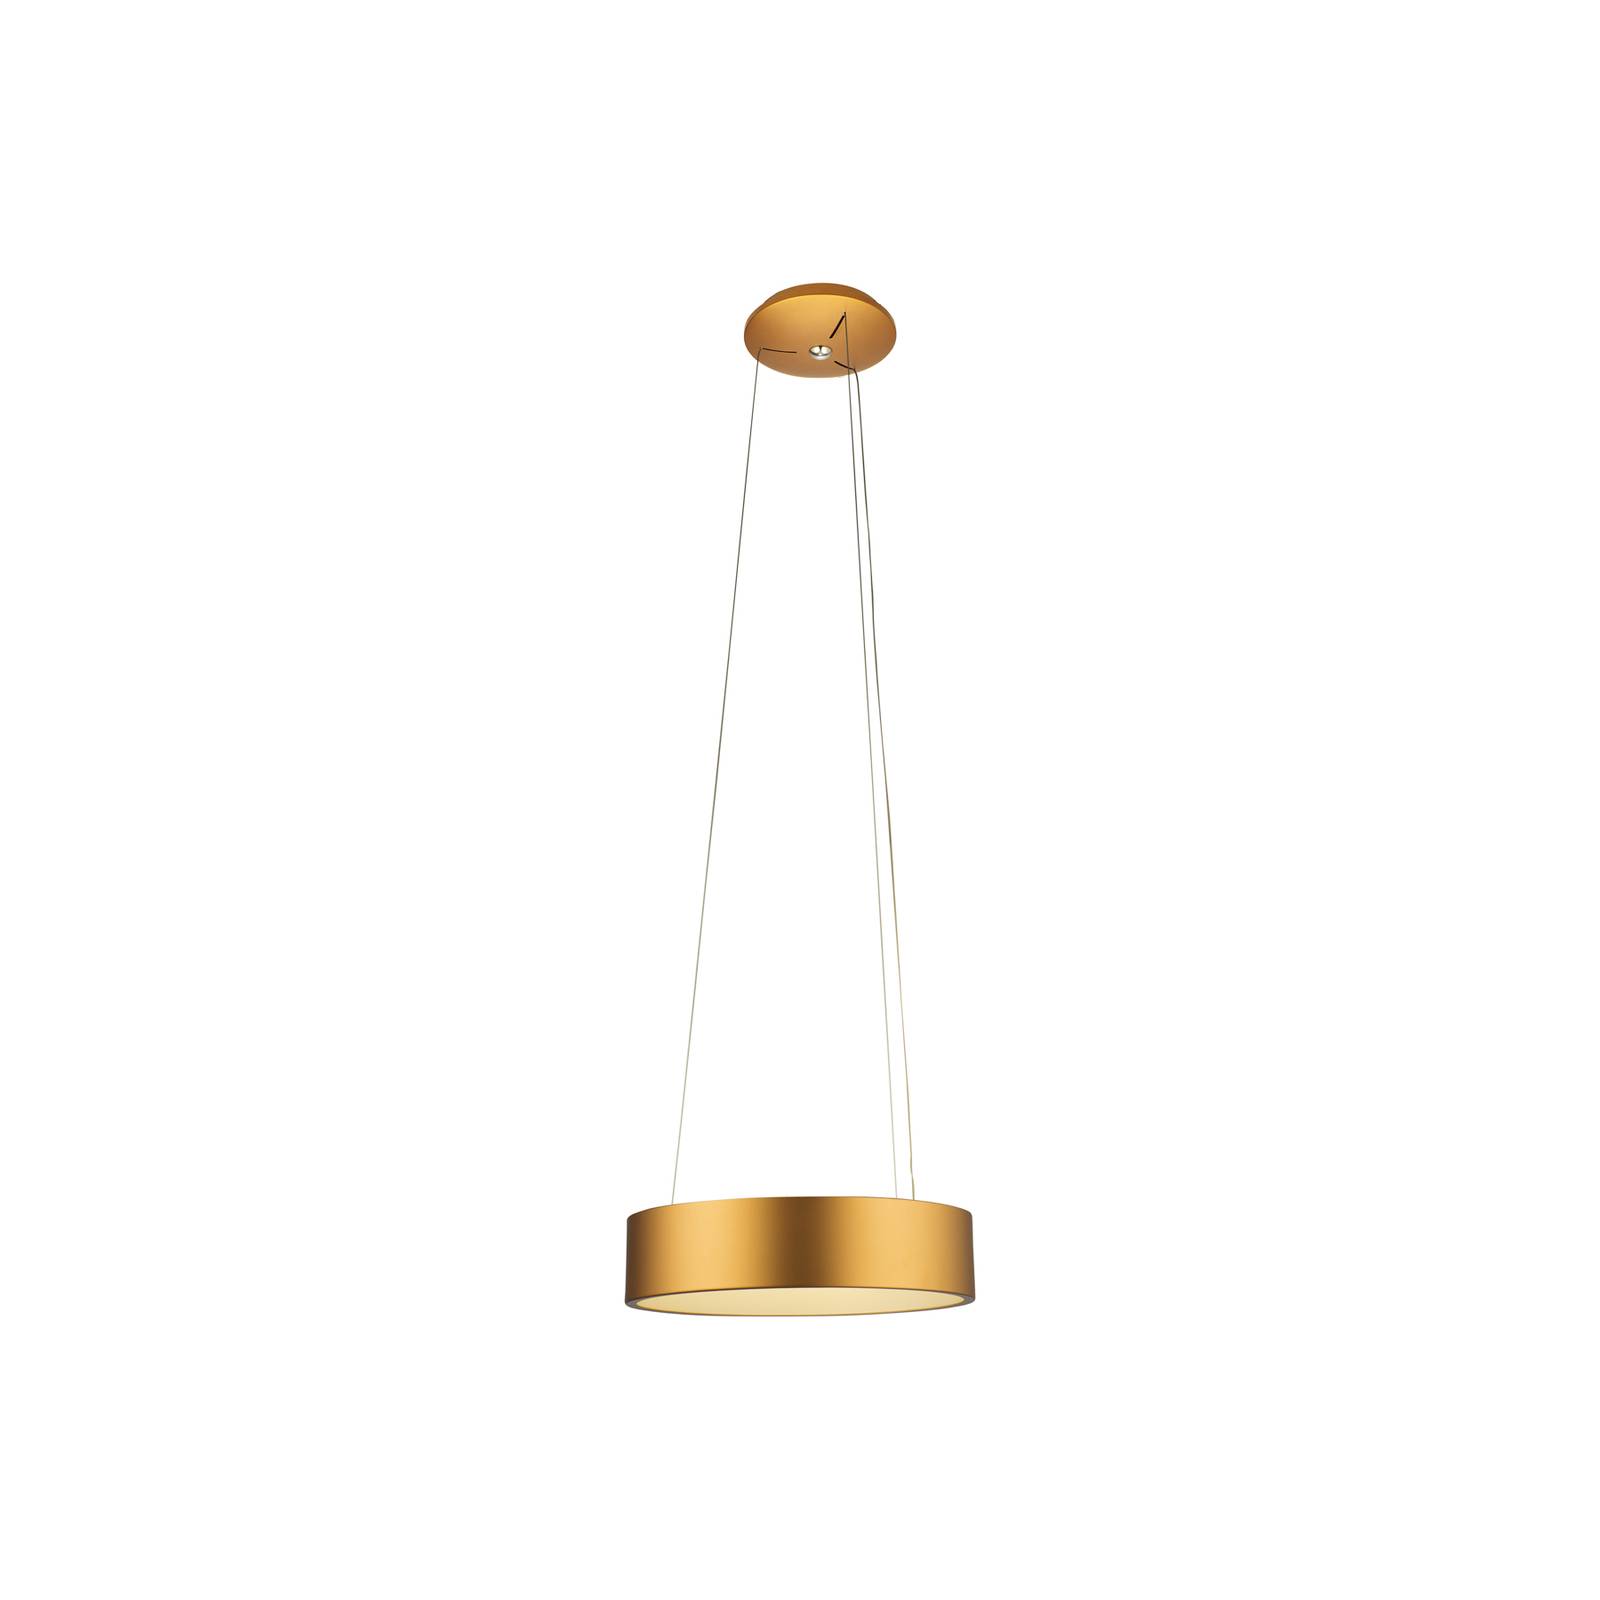 Image of Aluminor Epsilon LED a sospensione, Ø 62 cm, oro